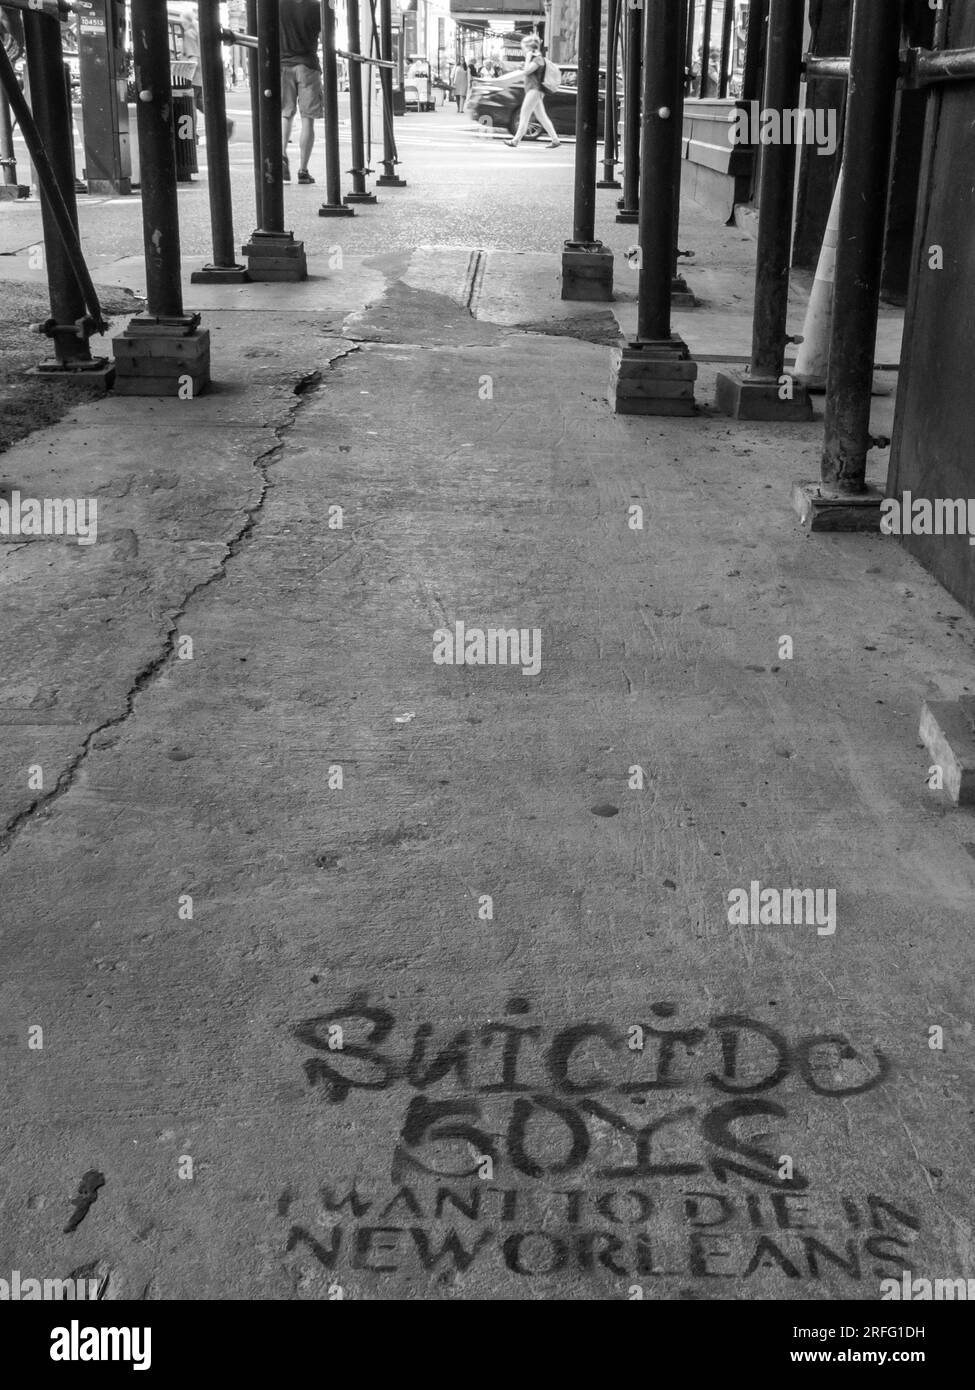 New York City Street gesäumt mit Gerüsten und Graffiti, auf dem steht: Suicide Boys I Want to die in New Orleans. Stockfoto